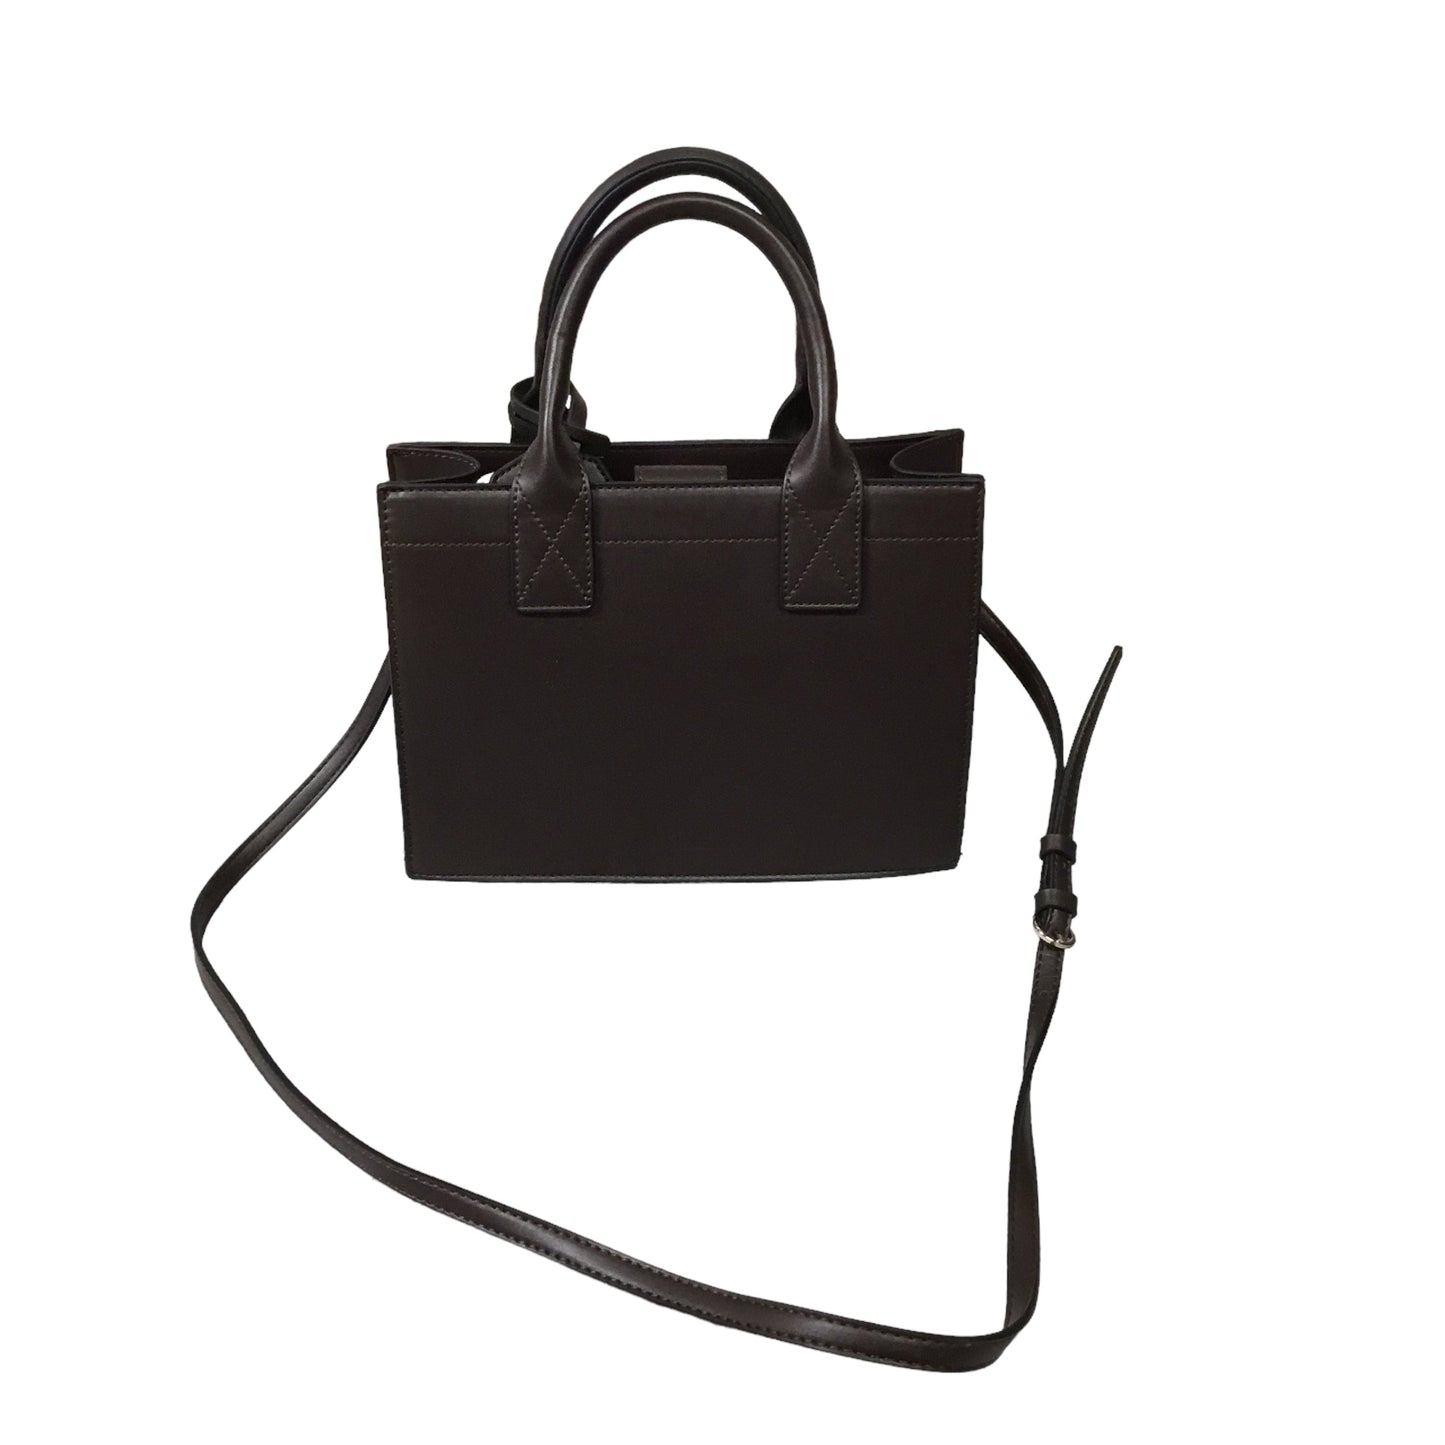 Handbag Designer By True Religion  Size: Medium